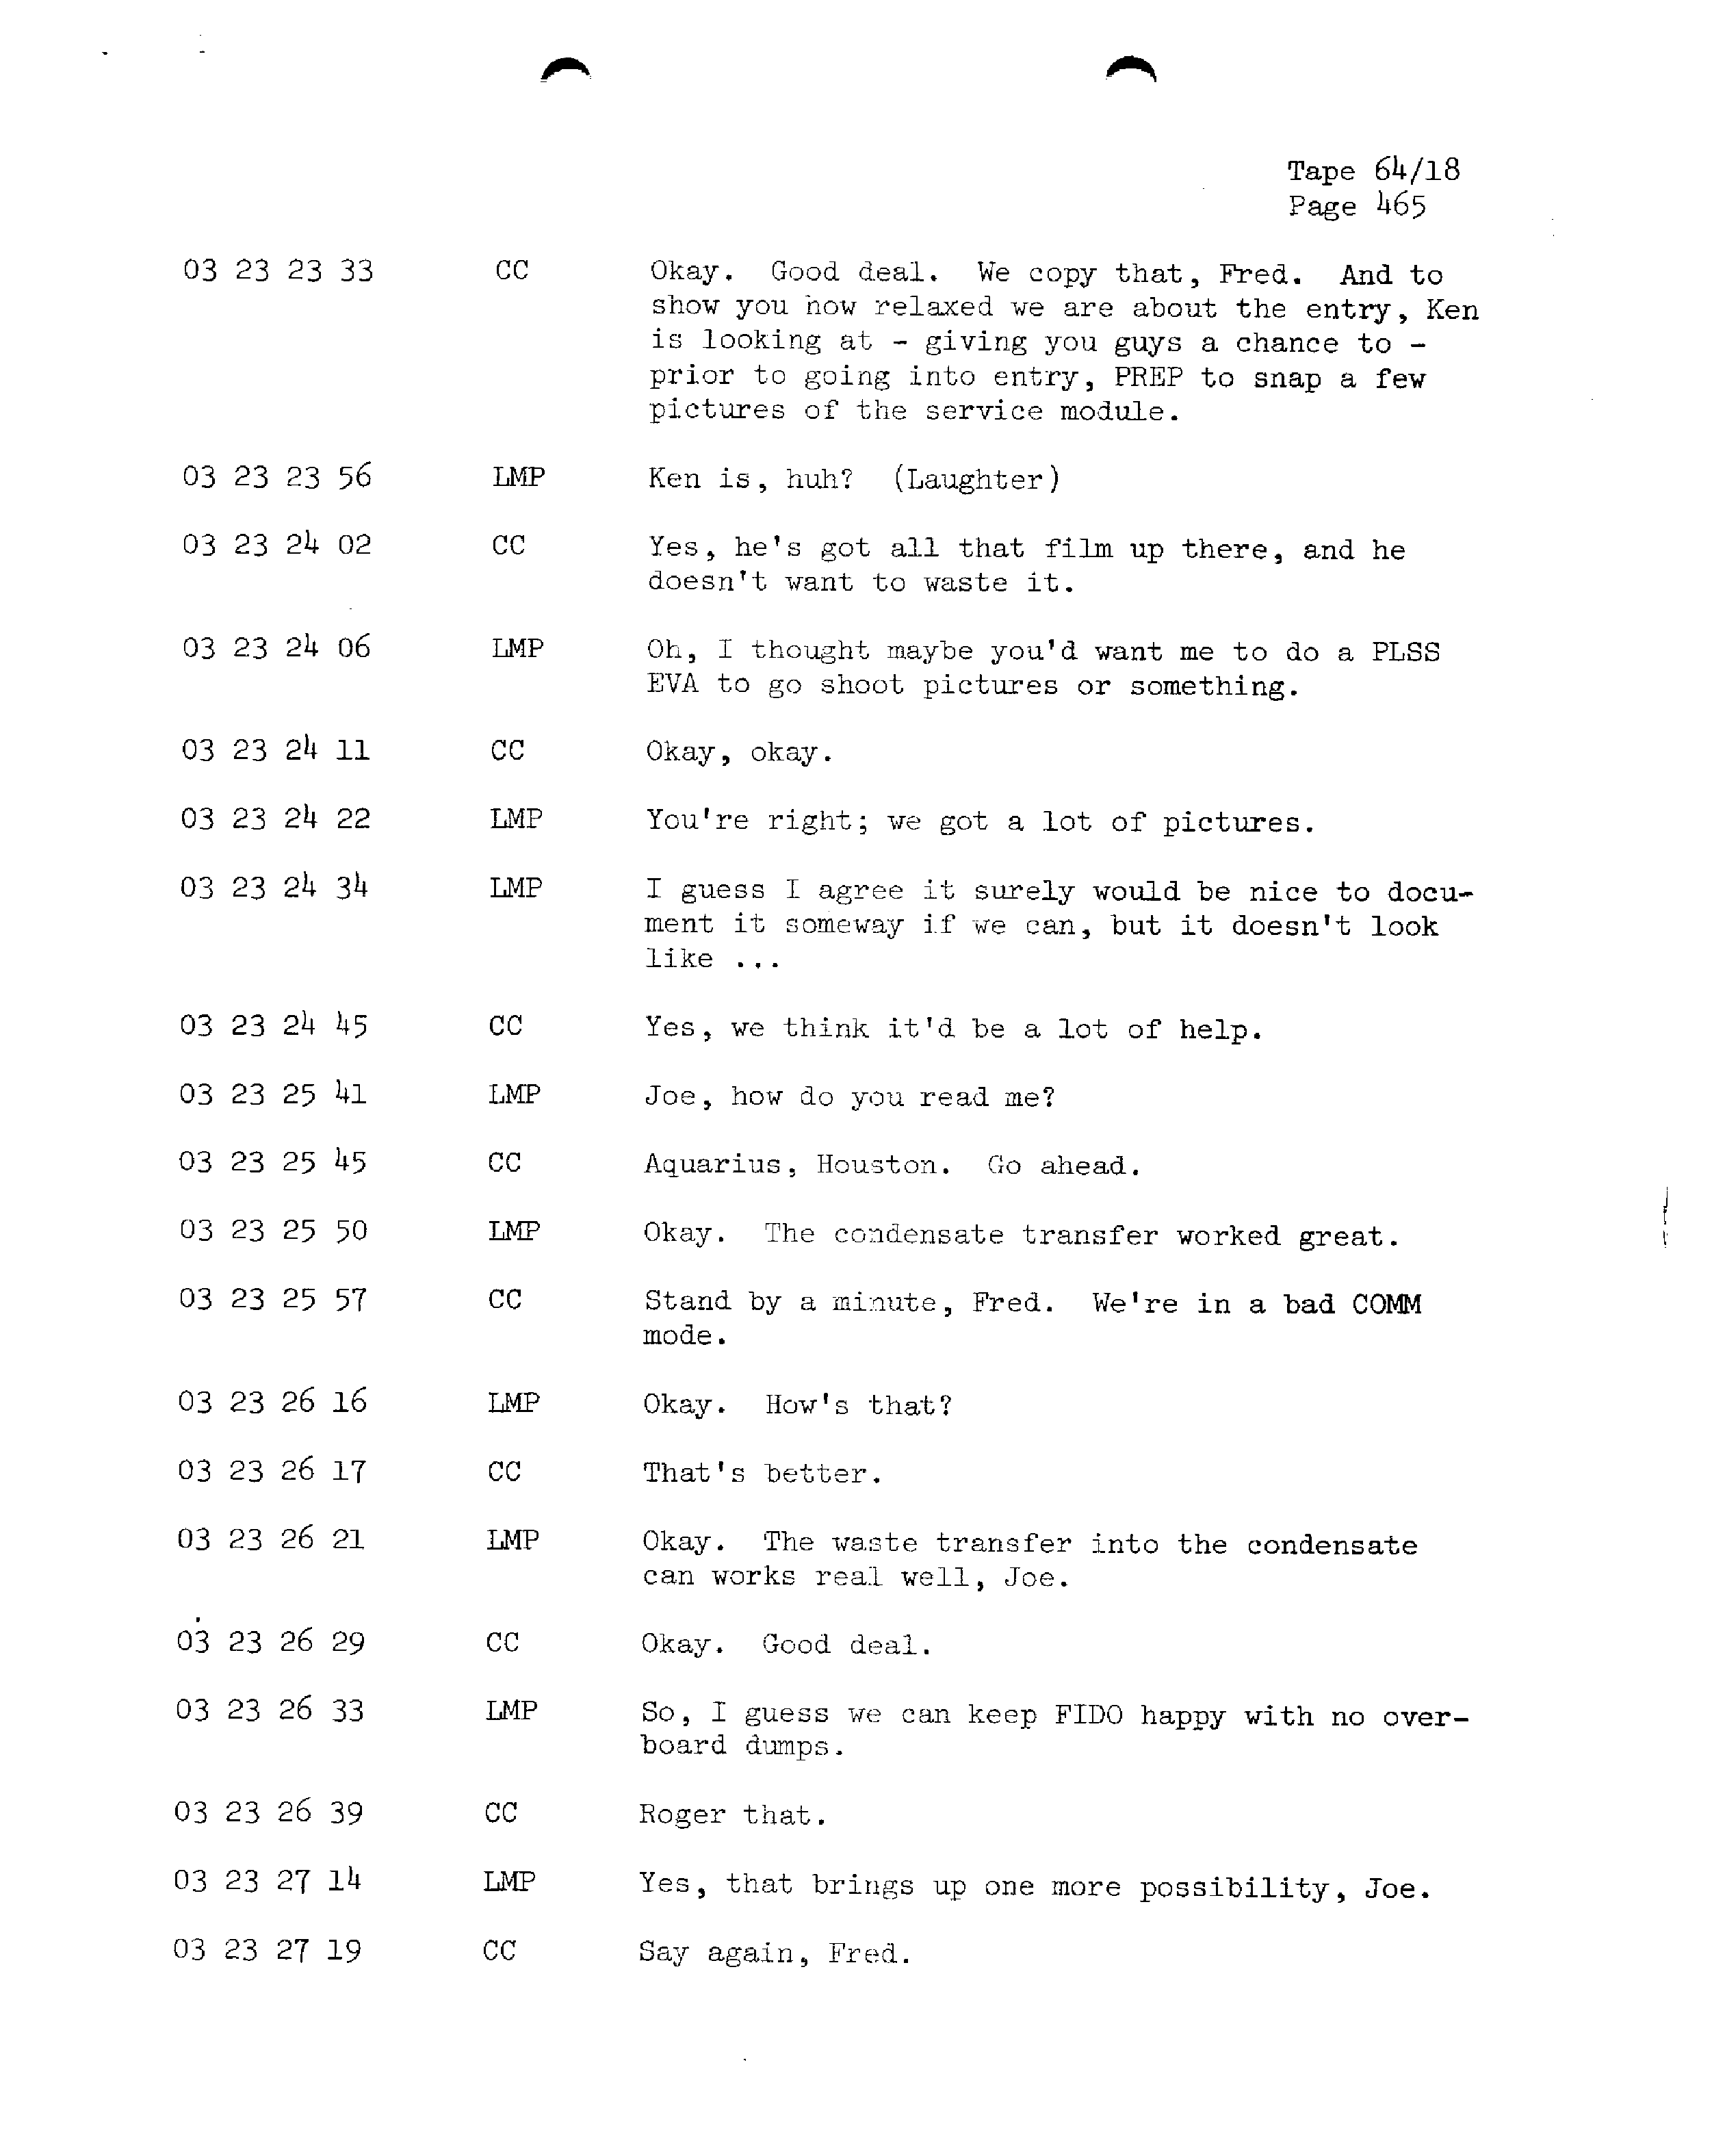 Page 472 of Apollo 13’s original transcript